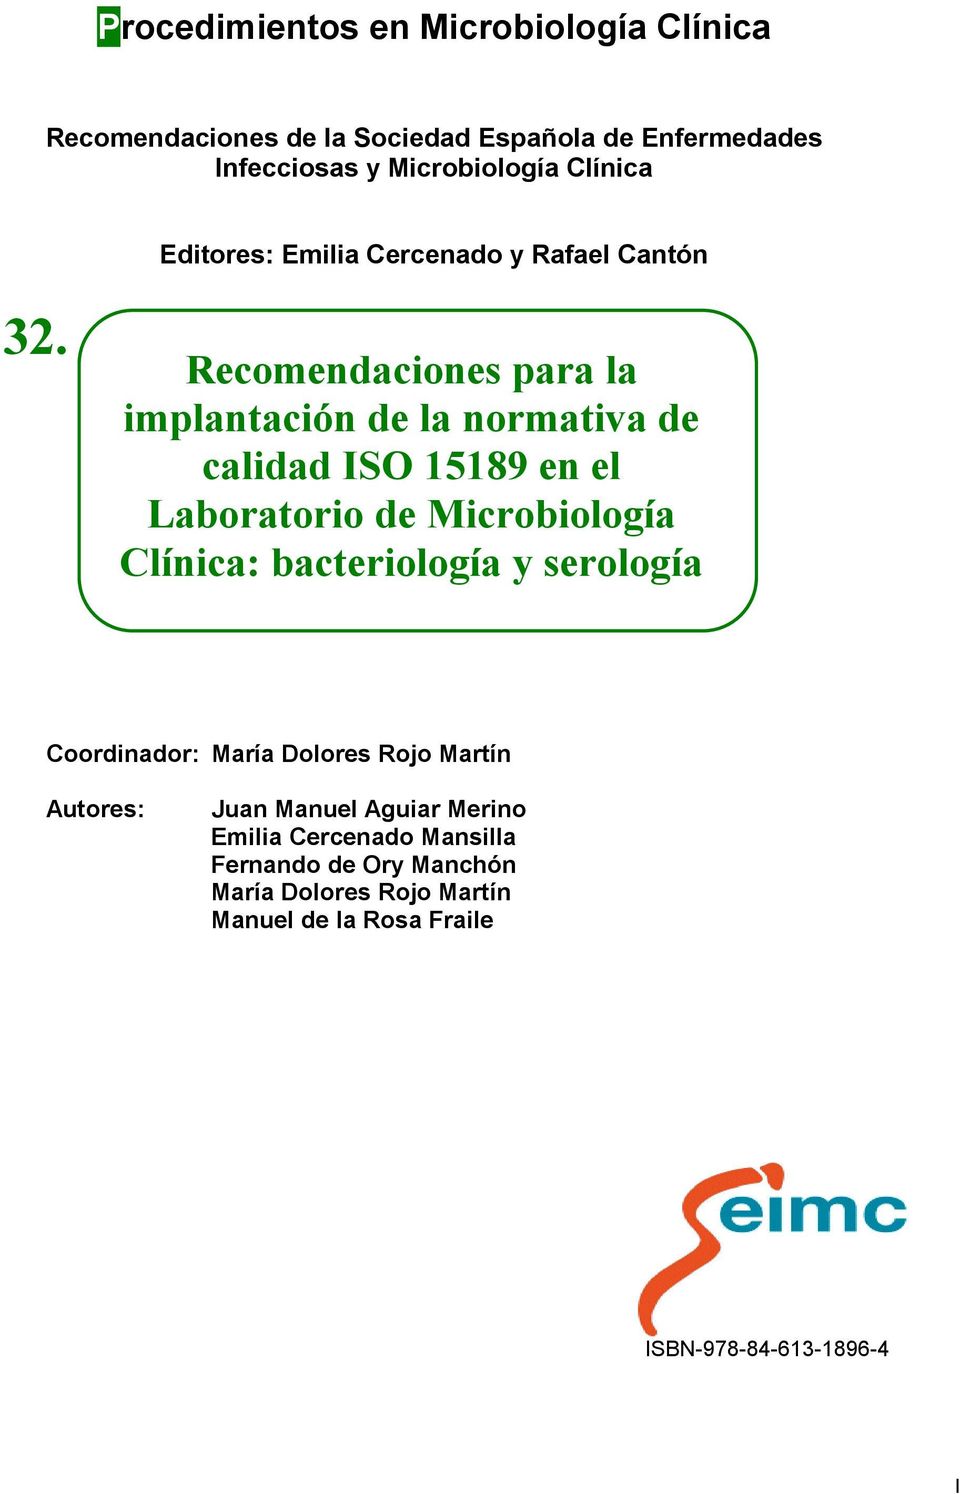 Recomendaciones para la implantación de la normativa de calidad ISO 15189 en el Laboratorio de Microbiología Clínica: